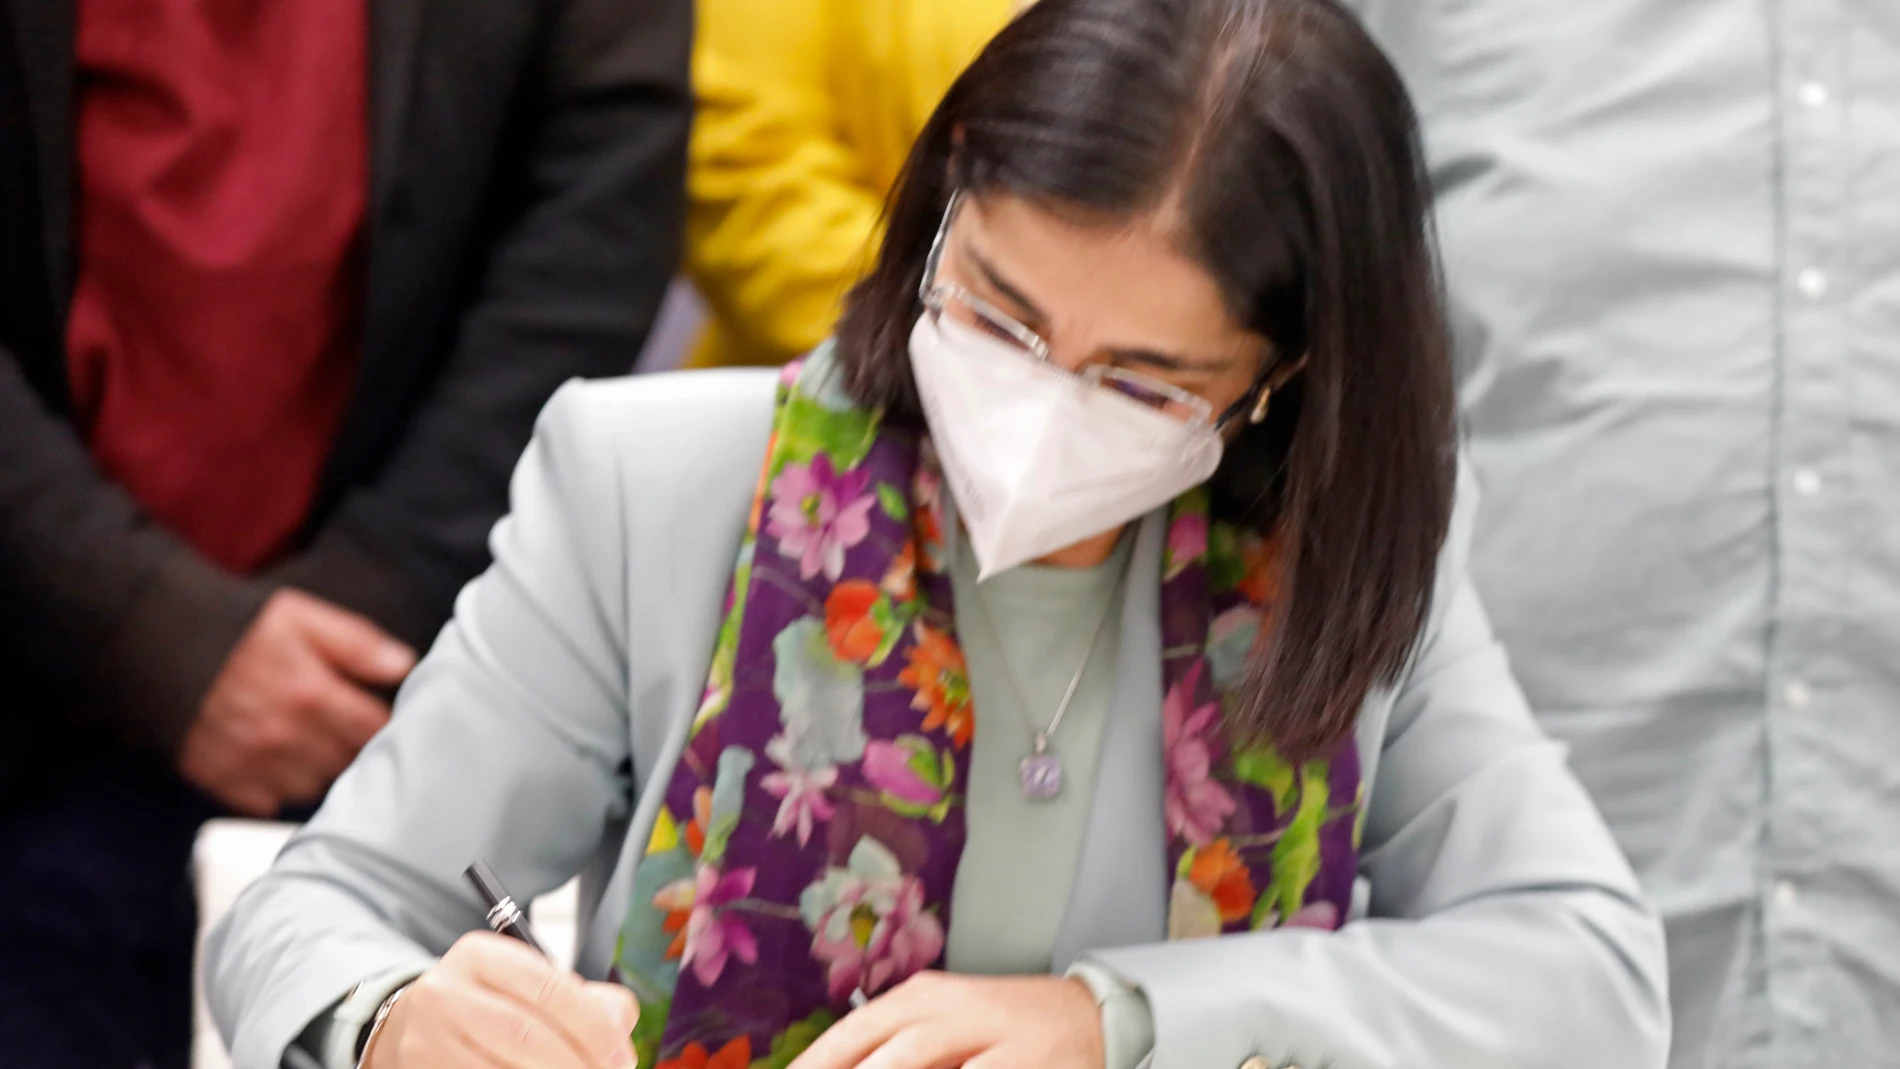 La ministra de Sanidad, Carolina Darias, durante la firma de una orden ministerial para cubrir tratamientos de fertilidad para mujeres sin pareja, lesbianas y personas trans, en el Ministerio de Sanidad